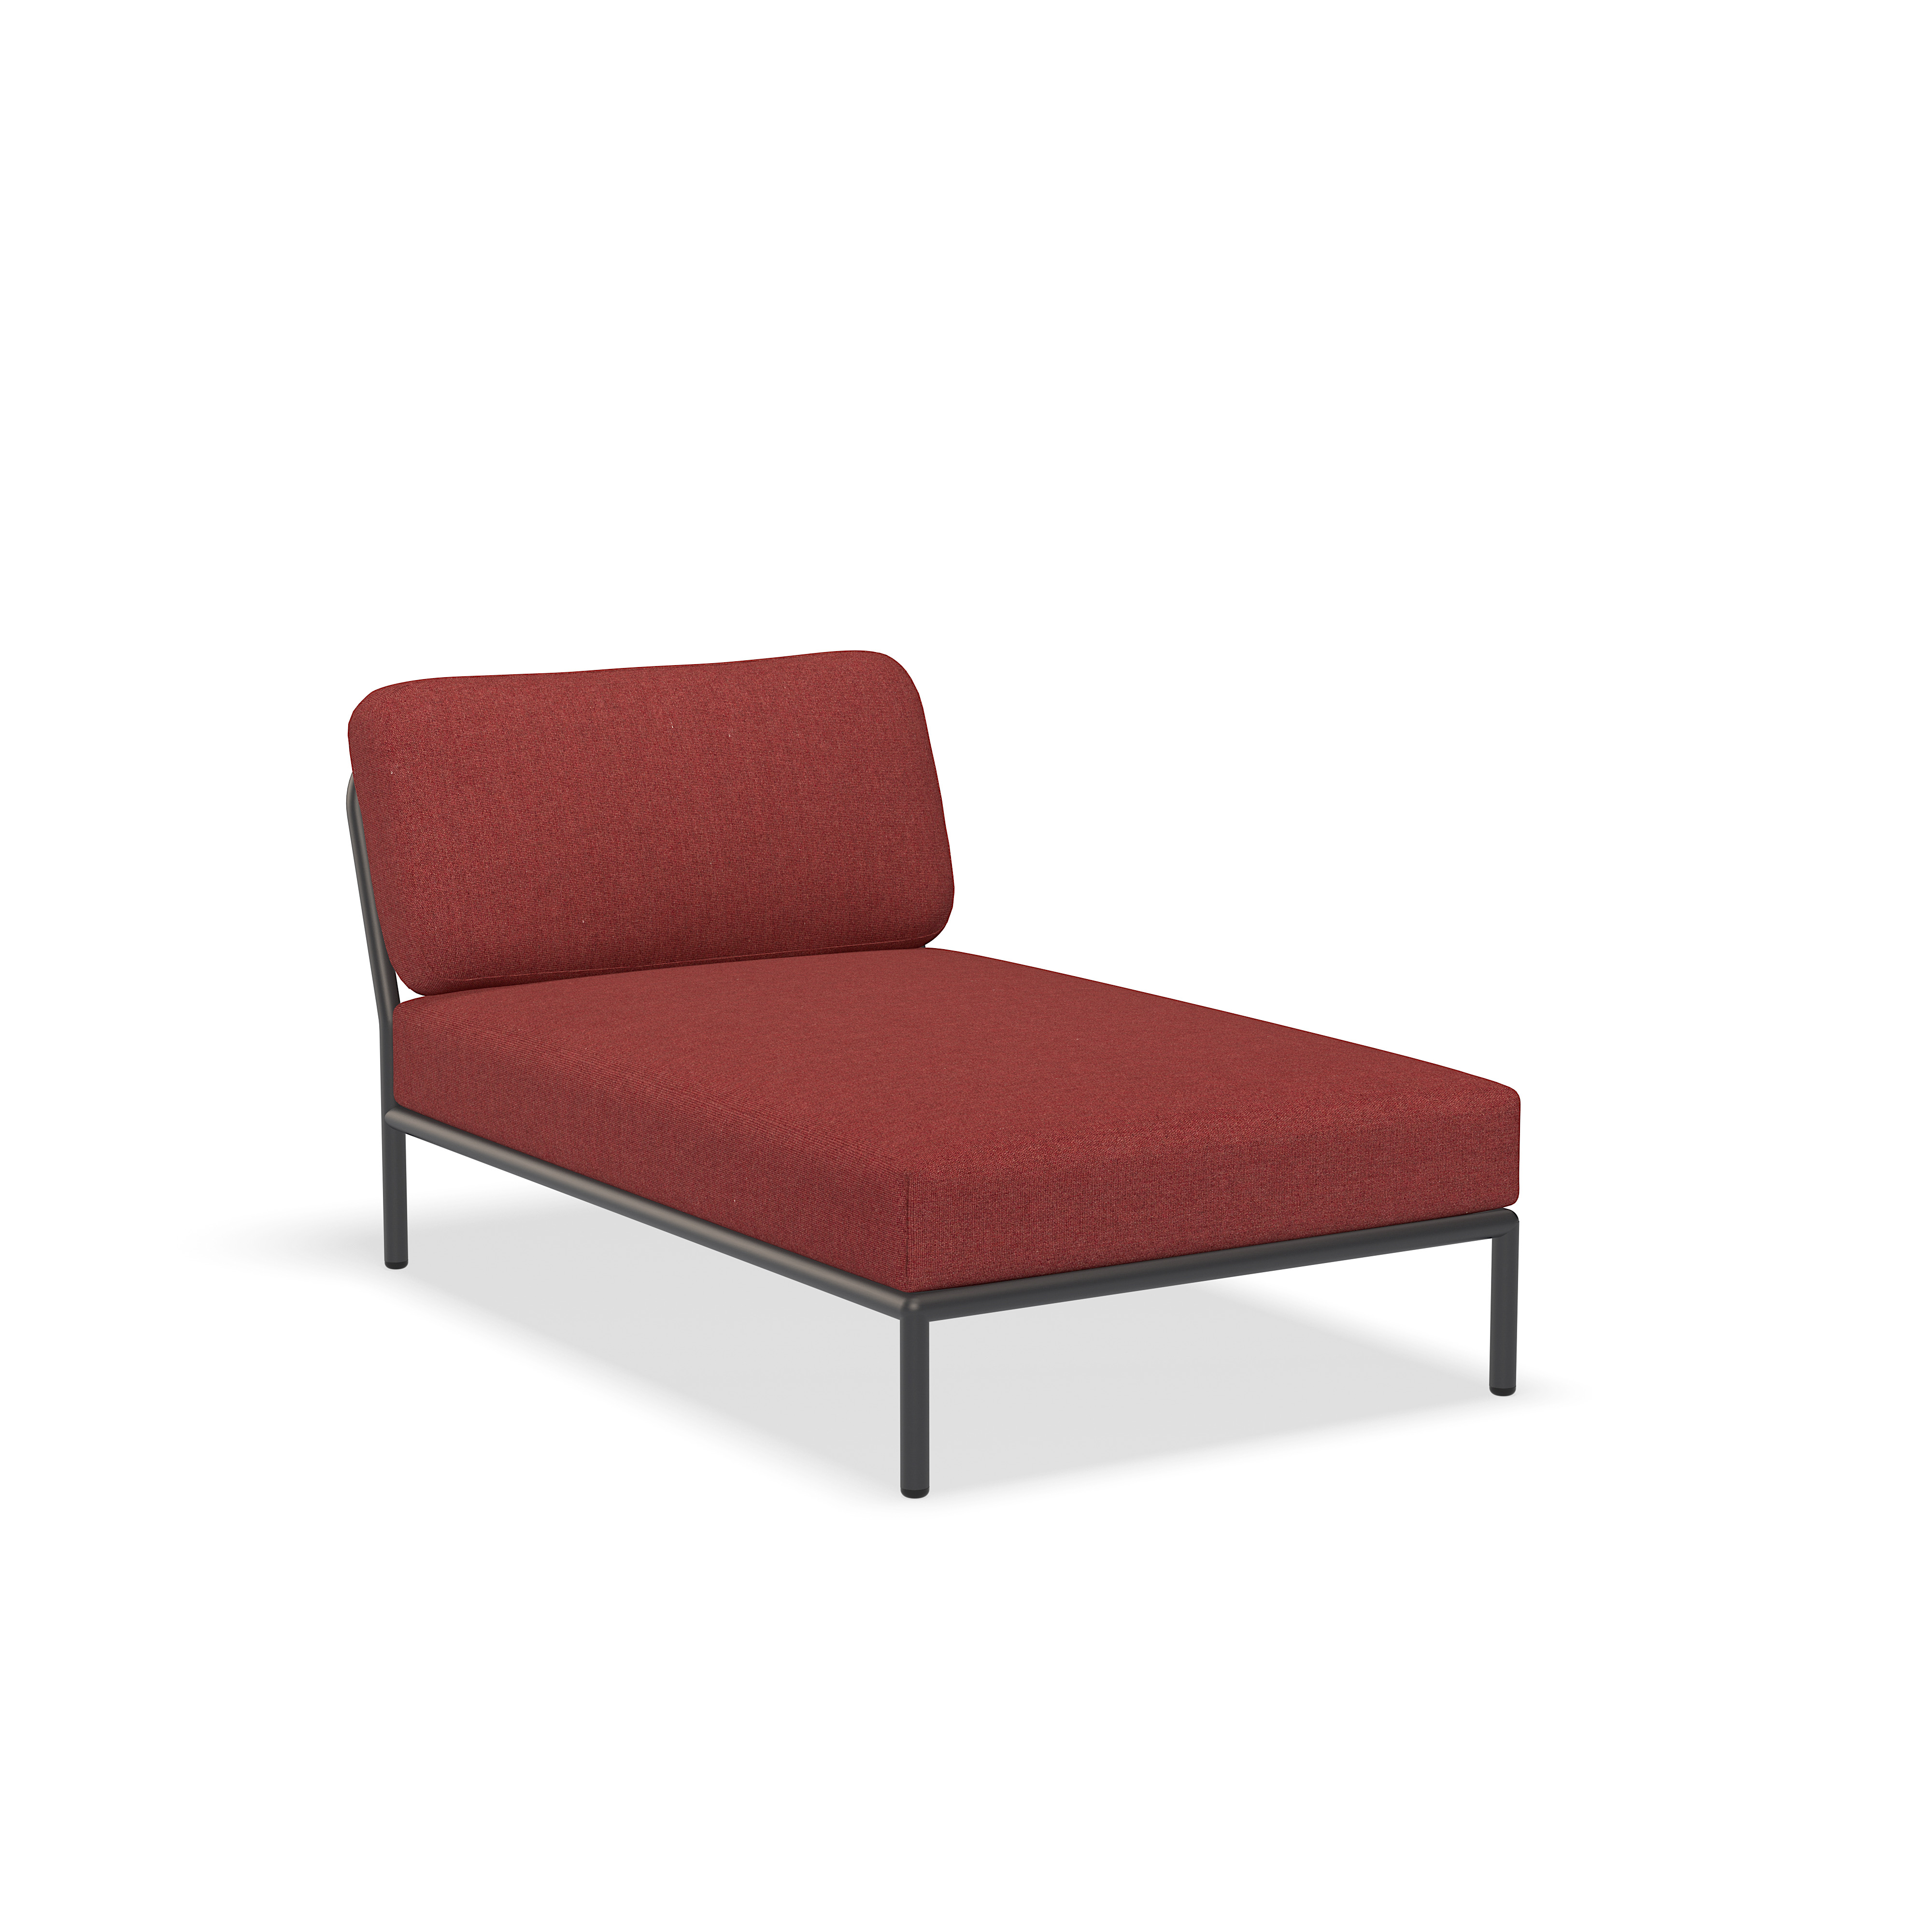 كرسي الصالة - 12209-1651 - كرسي صالة ، قرمزي (HERITAGE) ، هيكل رمادي غامق